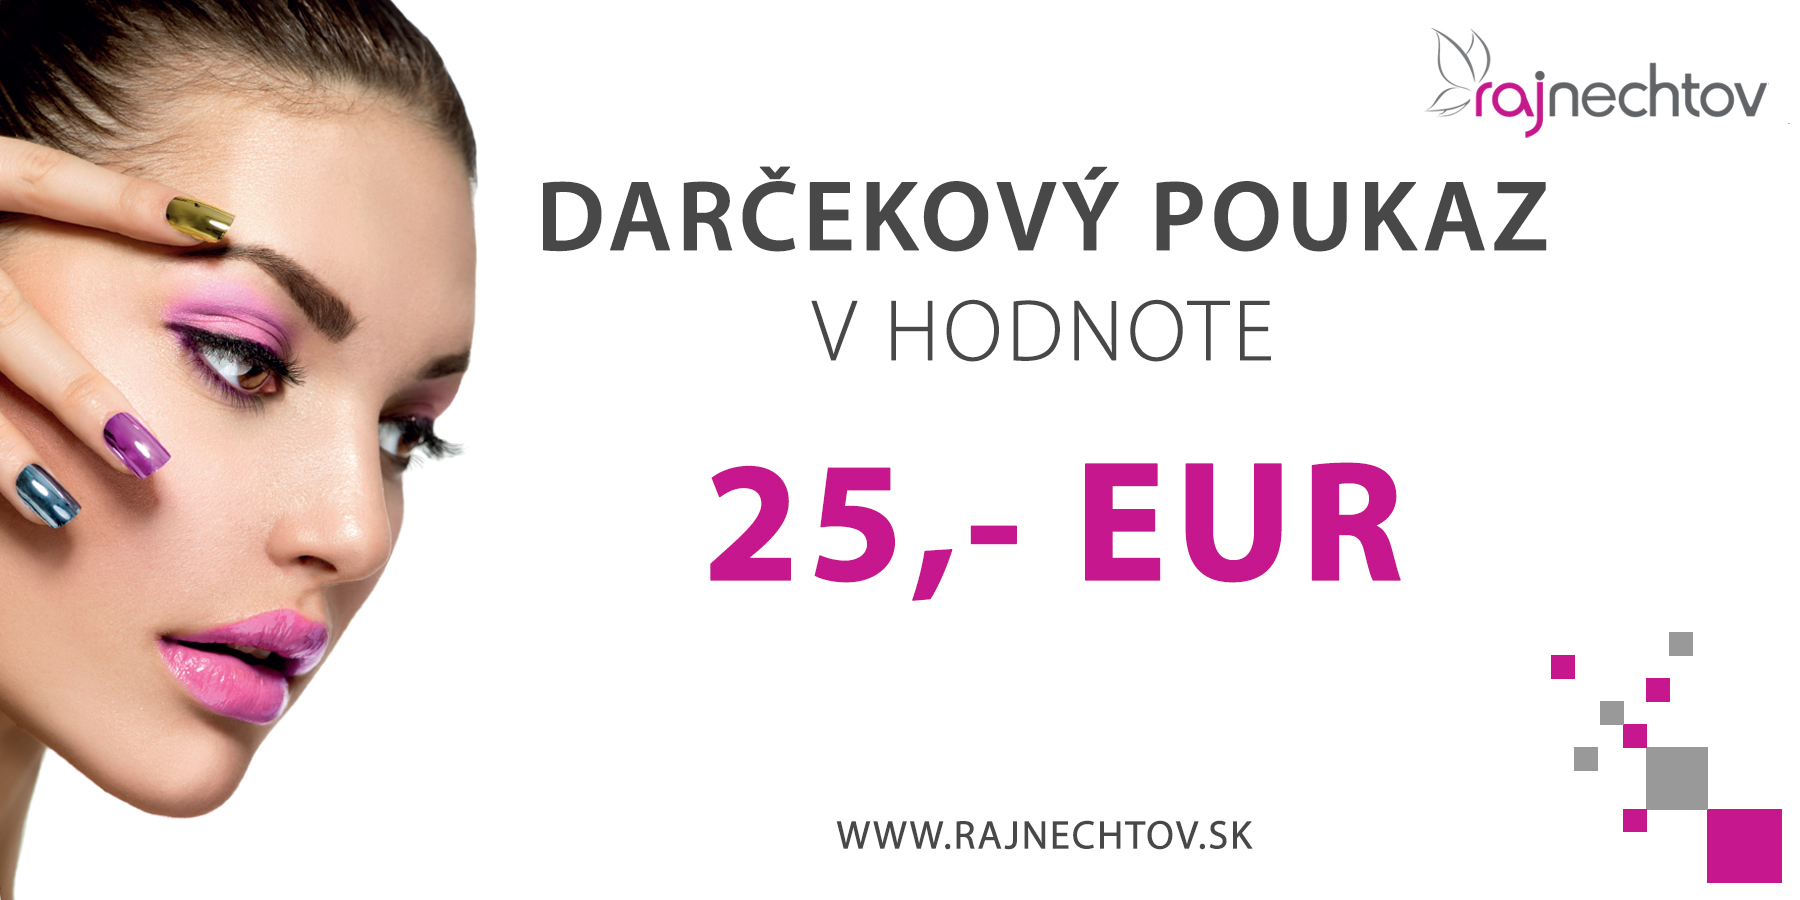 E-shop Darčekový poukaz 25 EUR